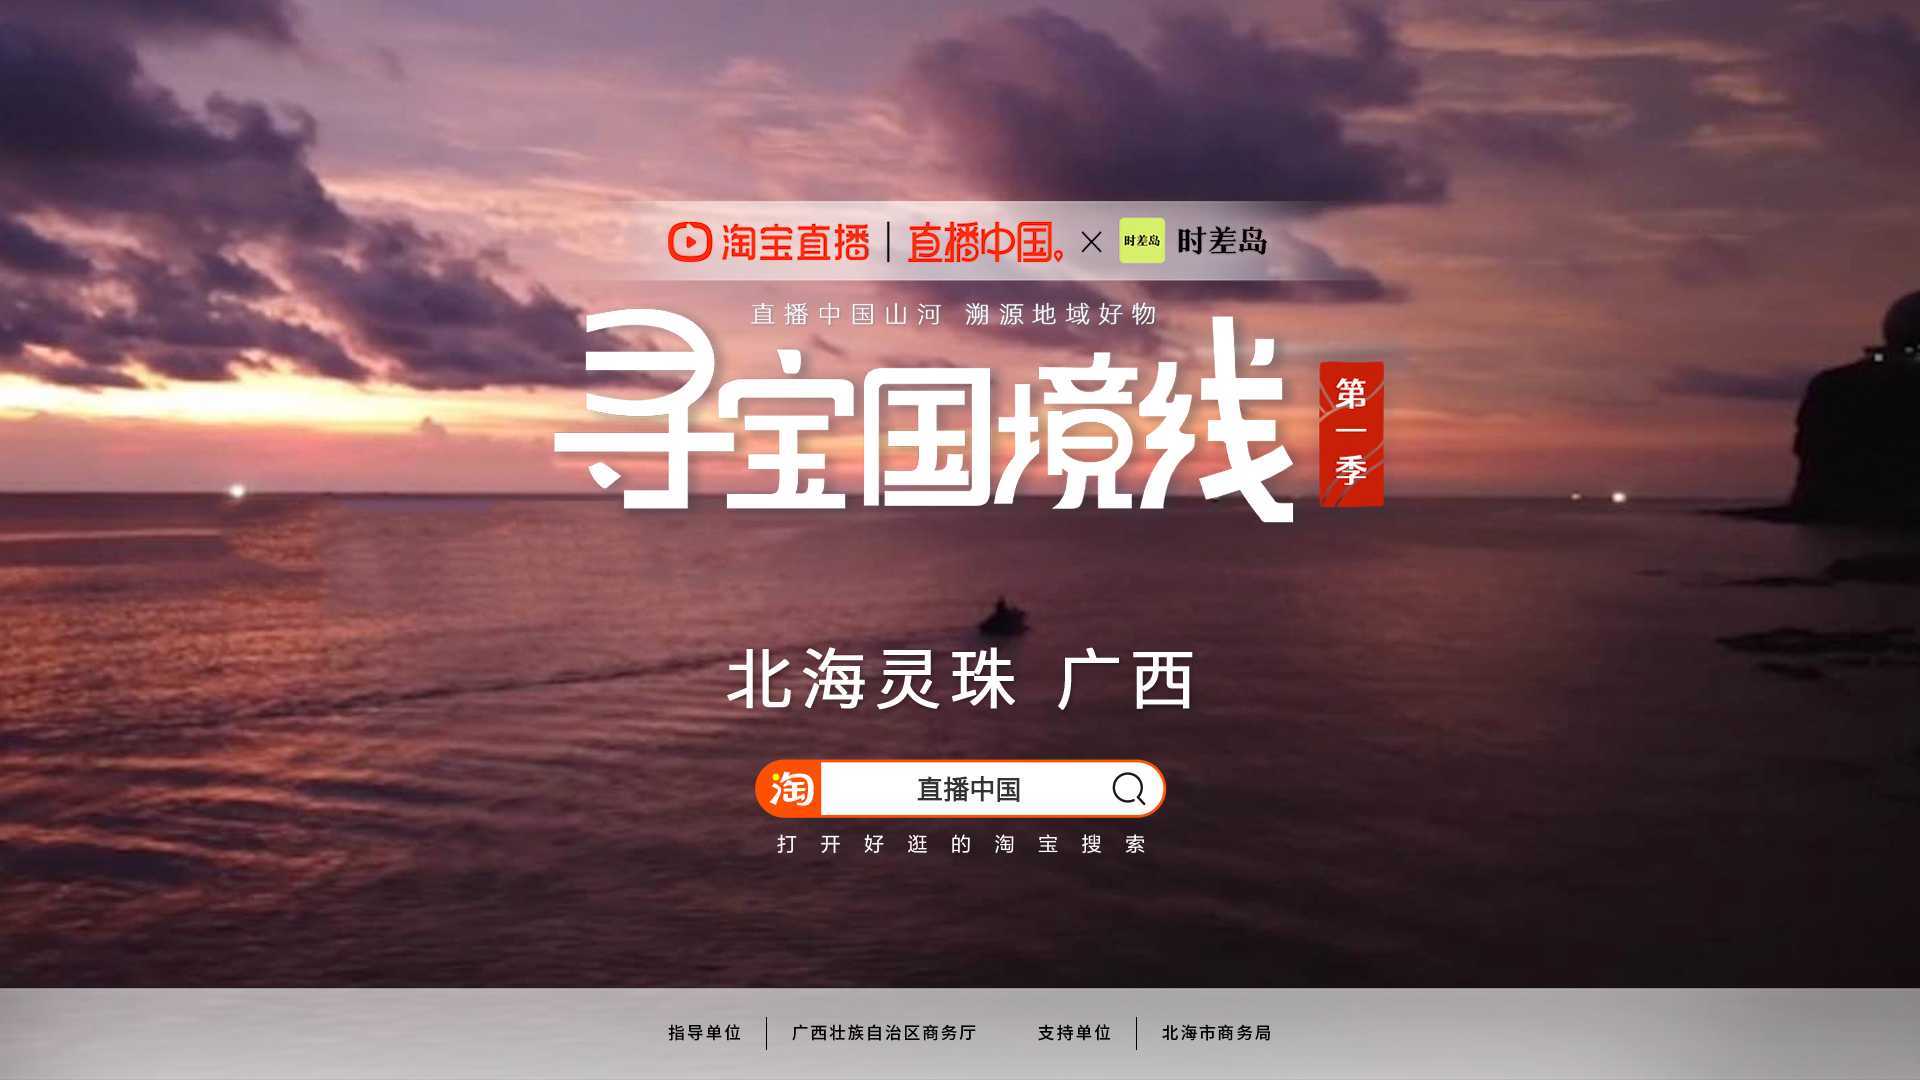 【淘宝直播X时差岛】直播中国第一季·《寻宝国境线》探寻南珠之乡